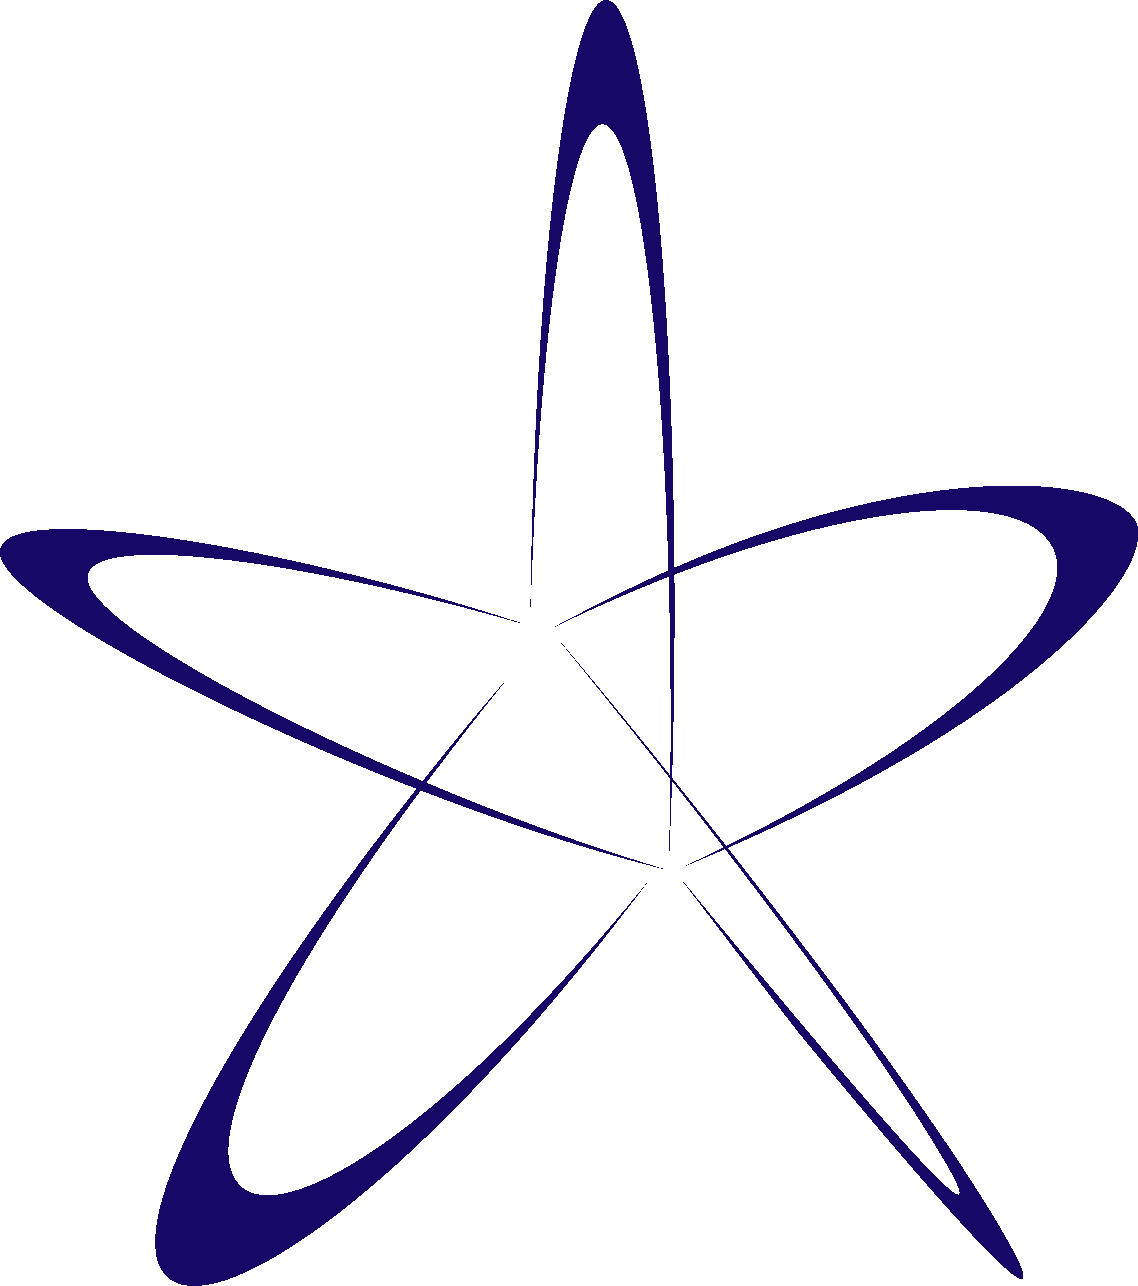 C5 2008 logo